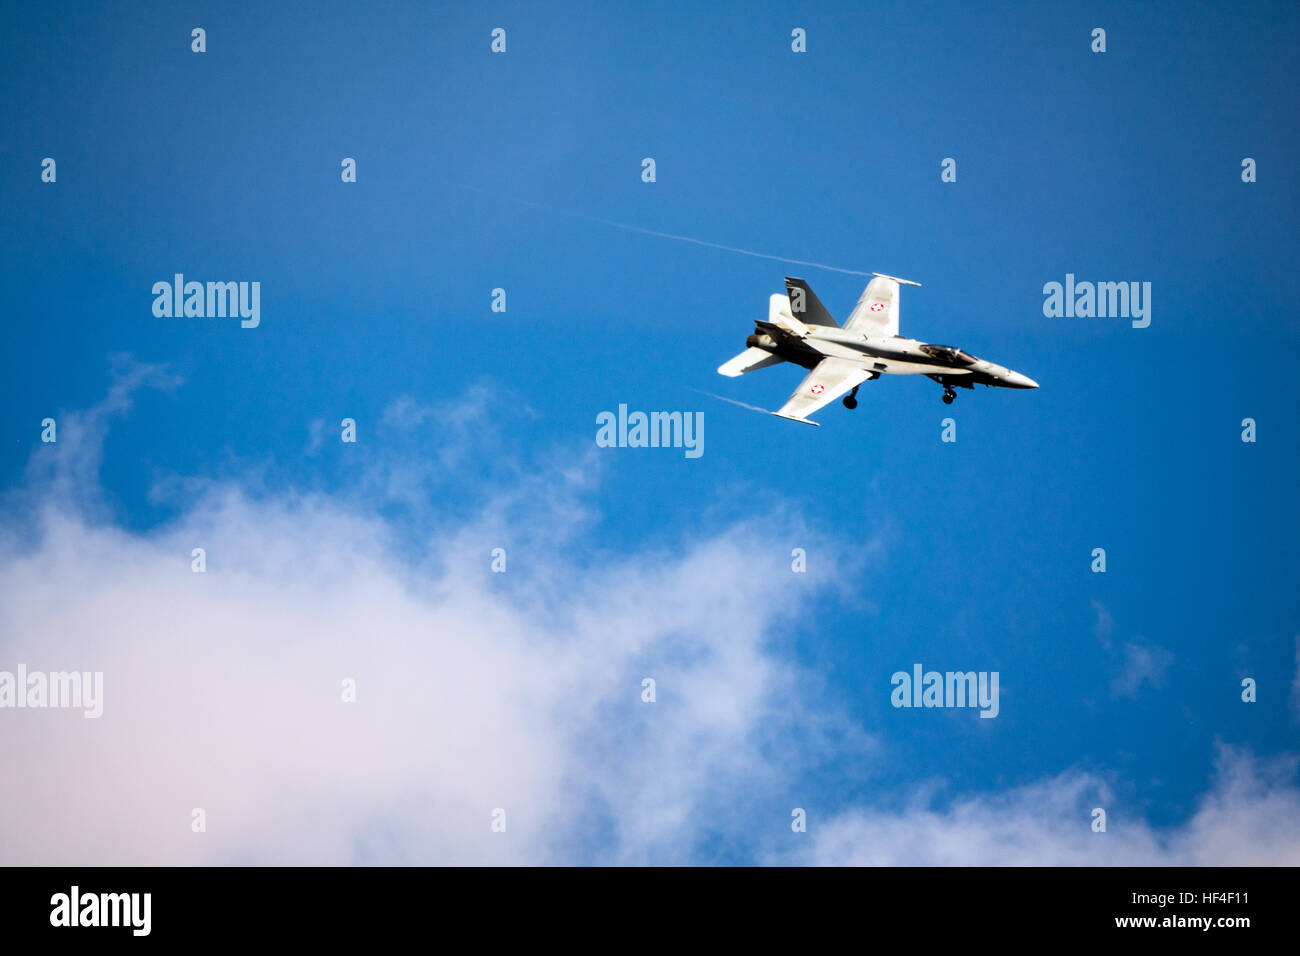 Swiss F-18 Hornet fighter aircraft Stock Photo